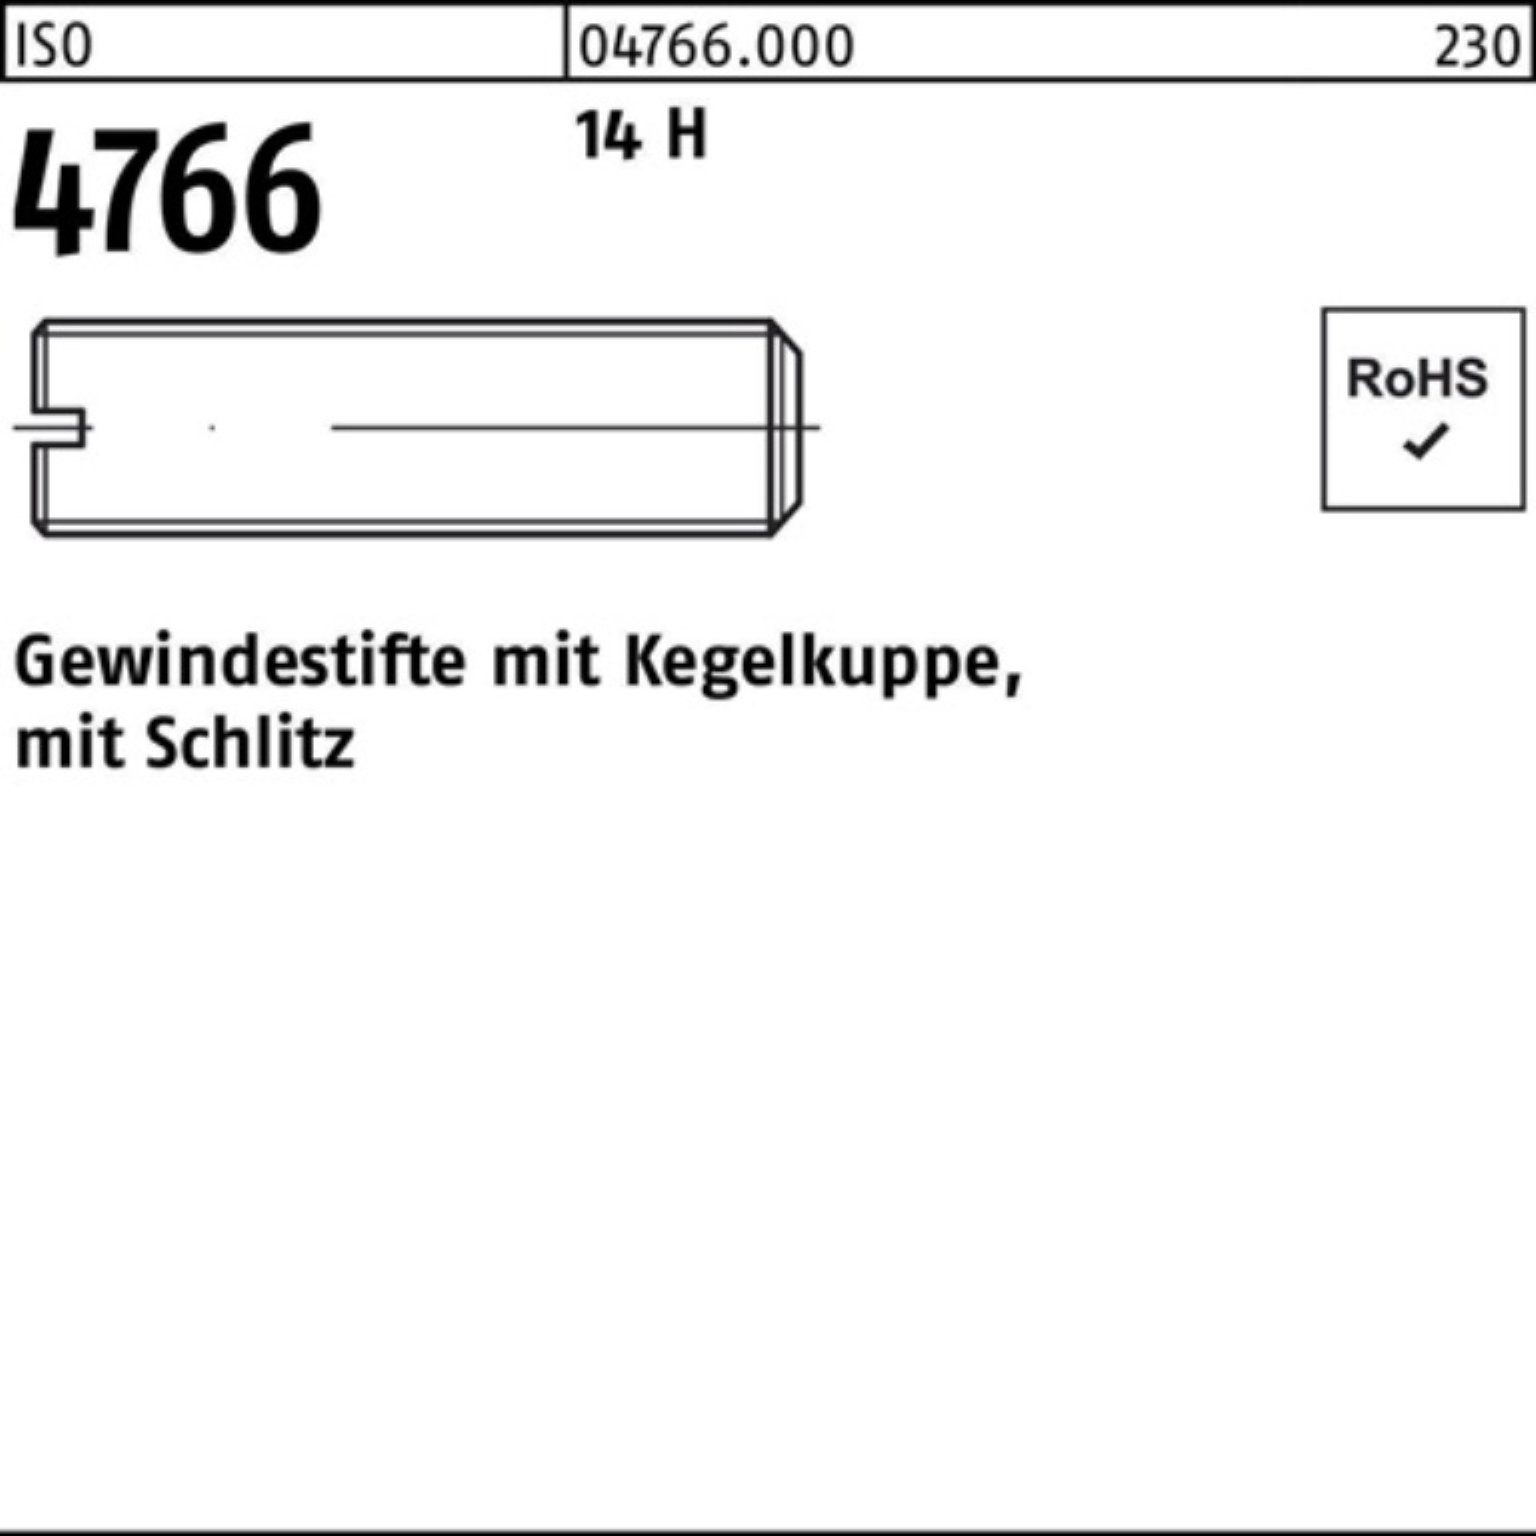 ISO Pack 12 Gewindestift 1000 4766 M6x 14 H Gewindebolzen Kegelkuppe/Schlitz Reyher 1000er